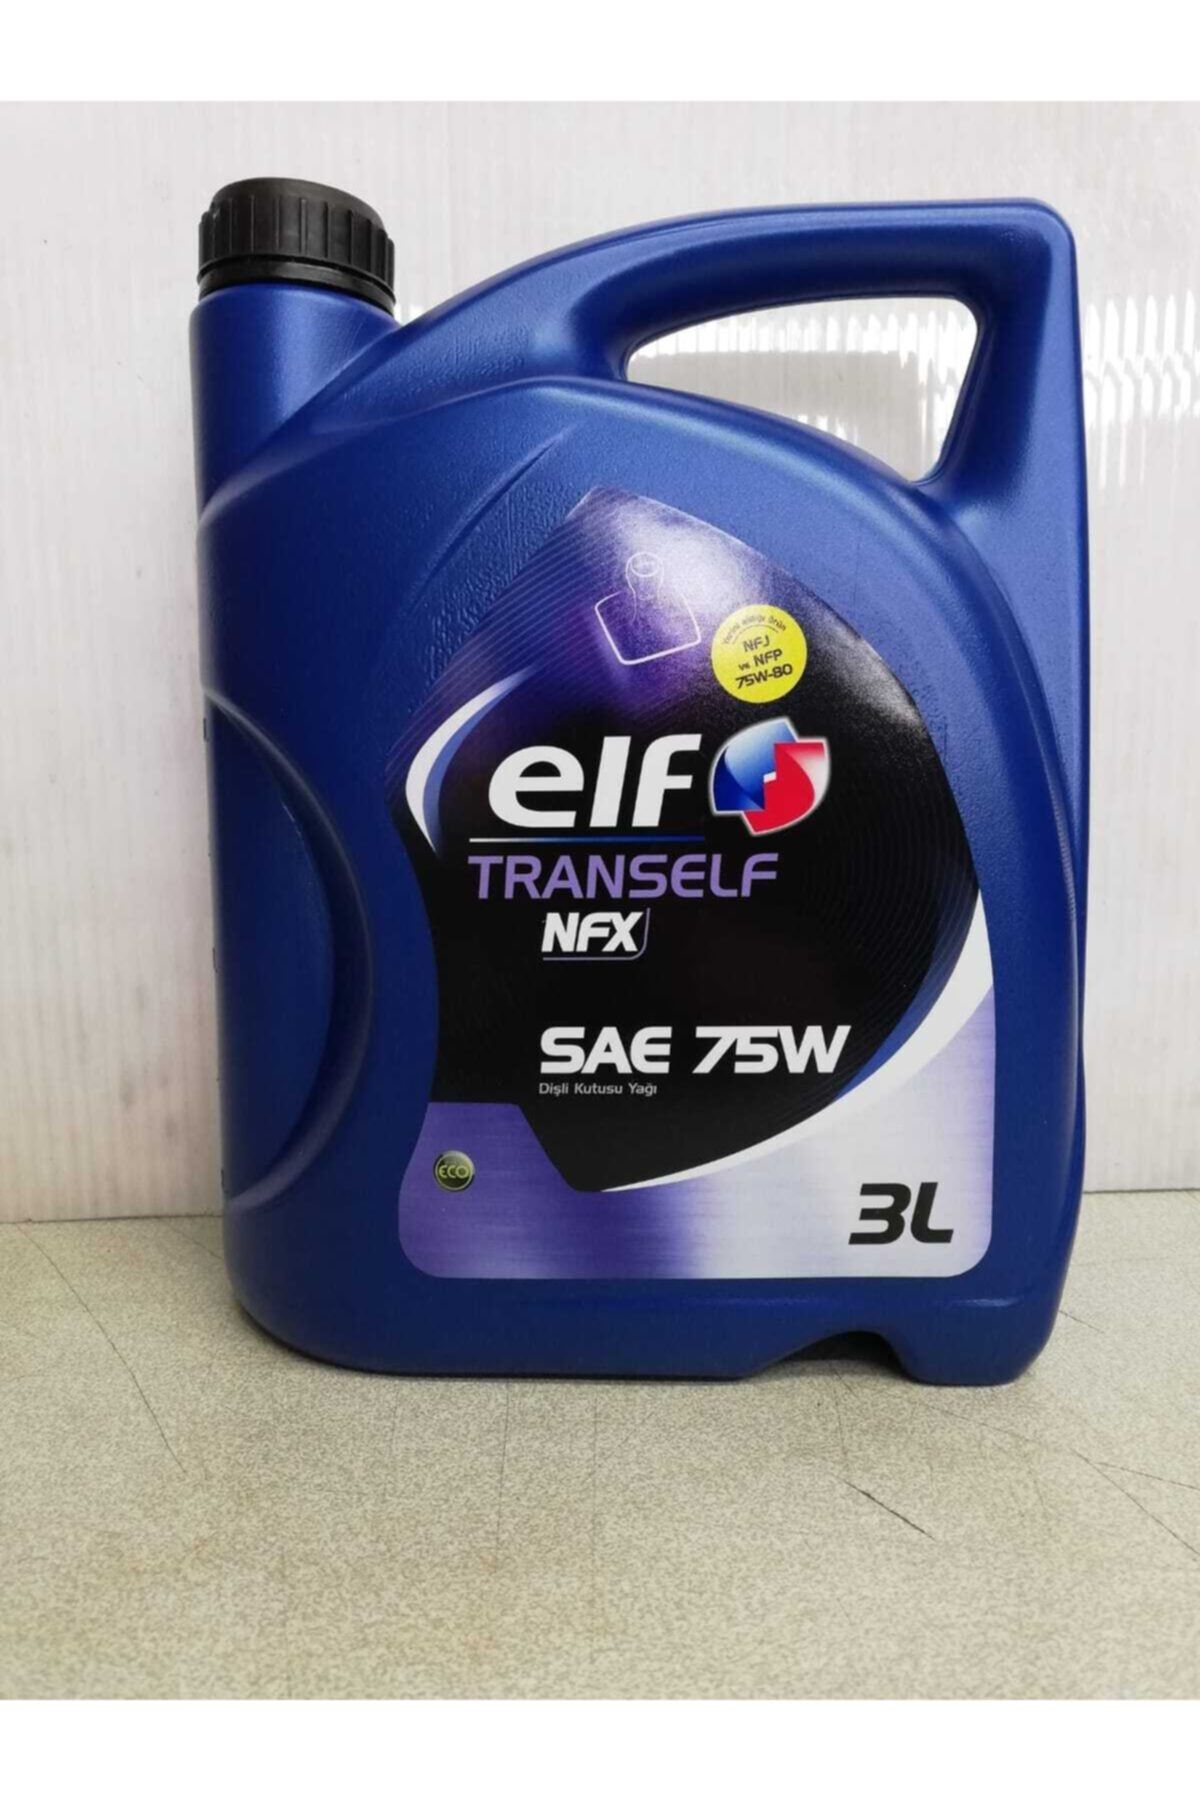 Трансмиссионное масло elf tranself. NFX SAE 75w. Elf NFJ 75w80 4л. Elf Tranself NFJ 75w 1л Бочковое. Трансмиссионное масло Elf Tranself NFX 75w.